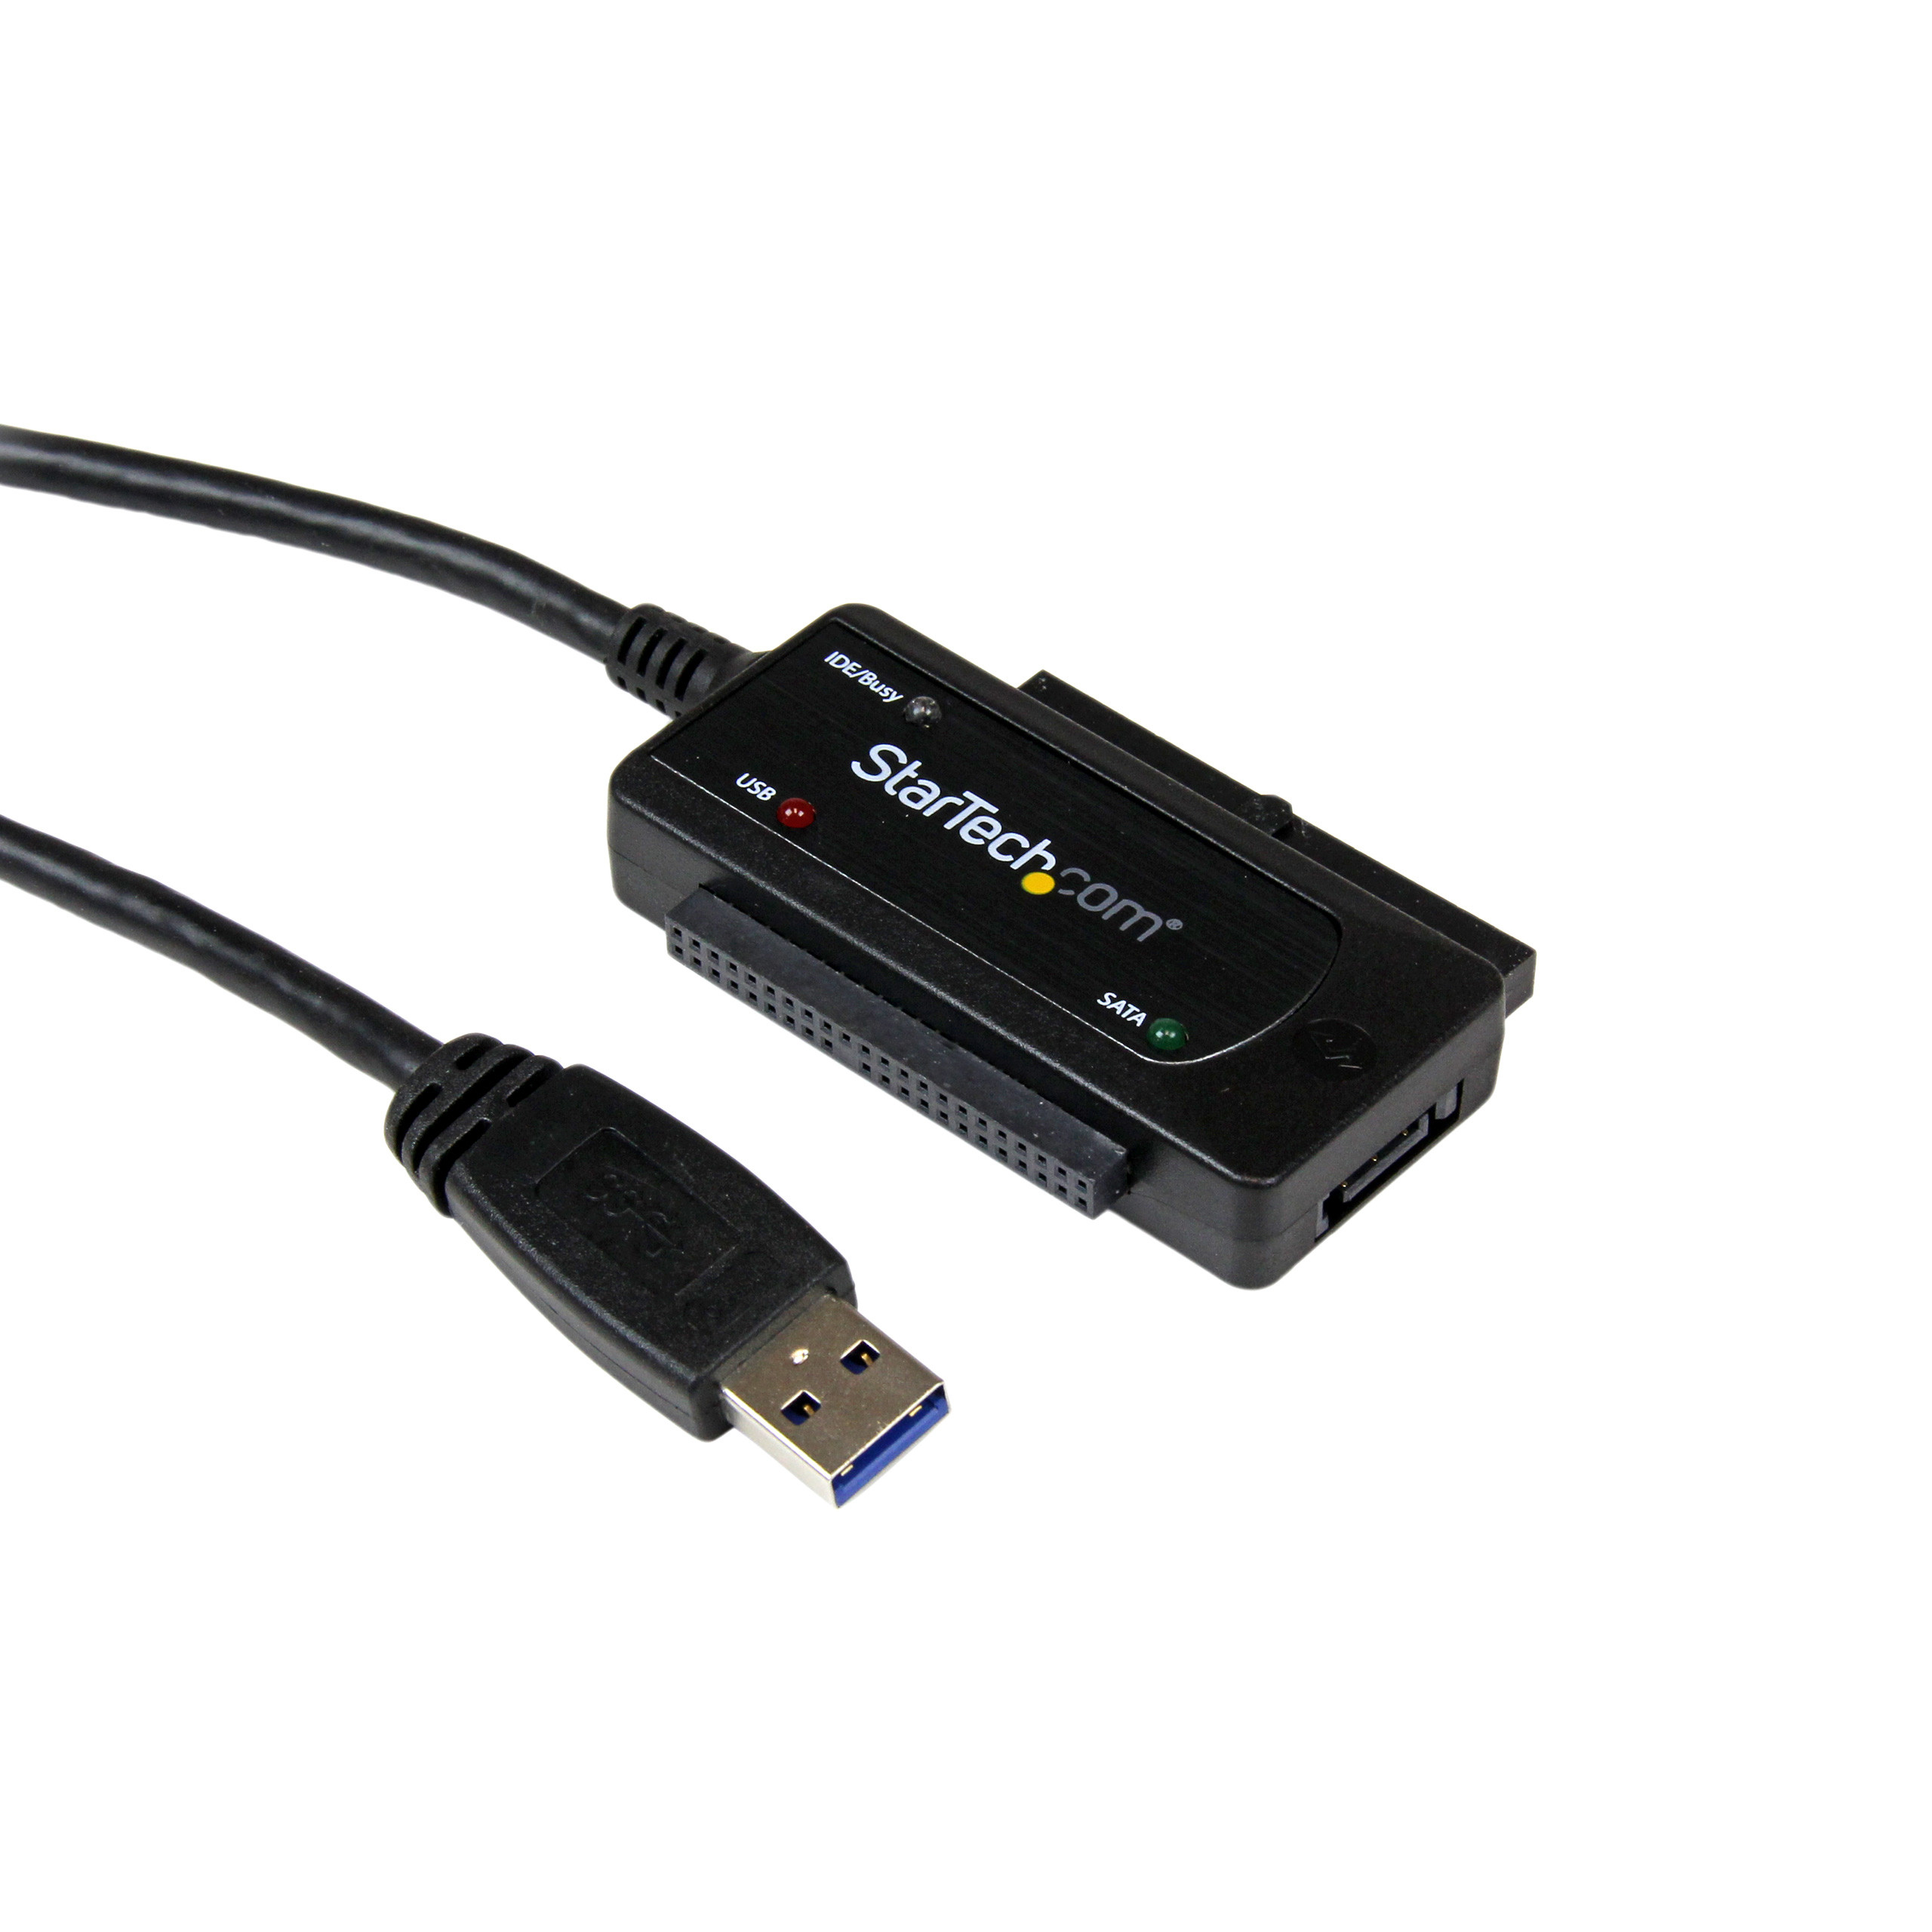 veel plezier mogelijkheid Manga Startech USB 3.0 to SATA / IDE Hard Drive Adapter Online Bestellen / Kopen  Codima